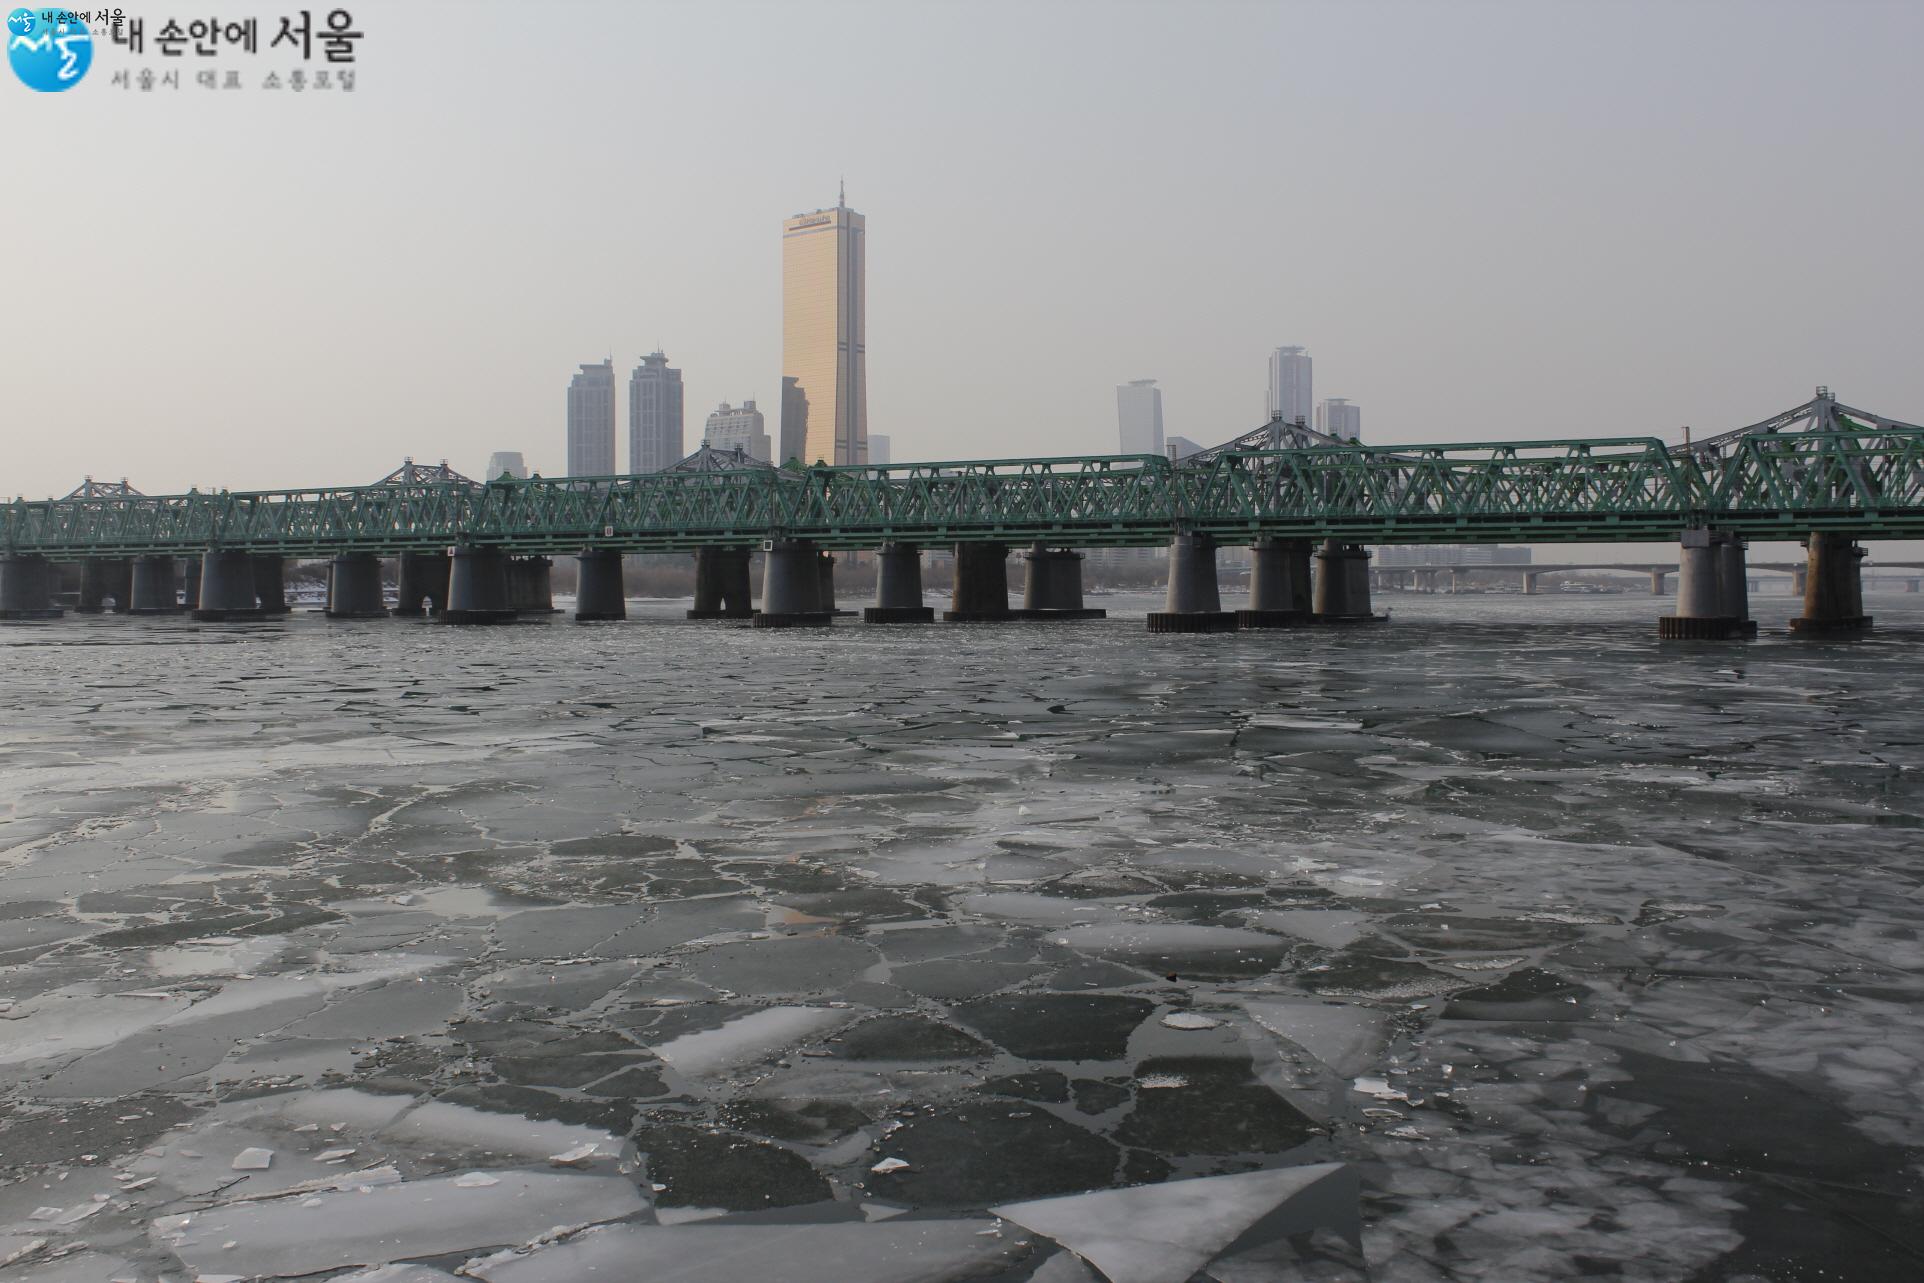 한강철교 밑 얼어붙은 한강의 모습 